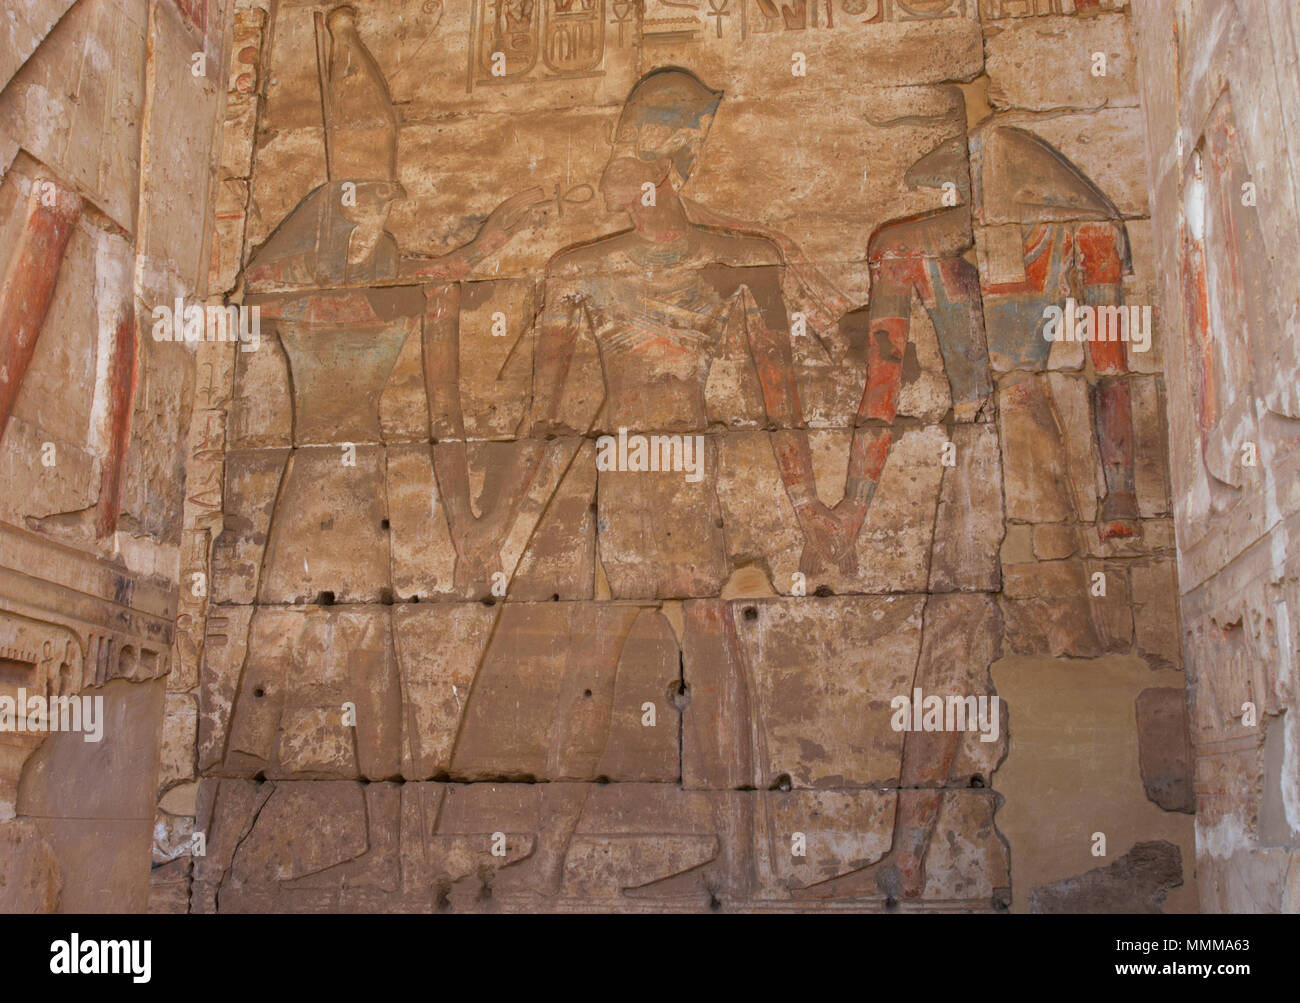 L'Egitto. Abydos. Tempio di Seti I. Nuovo Regno. Xix dinastia. Rilievo con policromia originale raffigurante il Faraone indossa la Corona Blu (Khepresh). Al suo fianco dèi Horus (sinistra) e Khnum (a destra). 1292-1189 A.C. Foto Stock